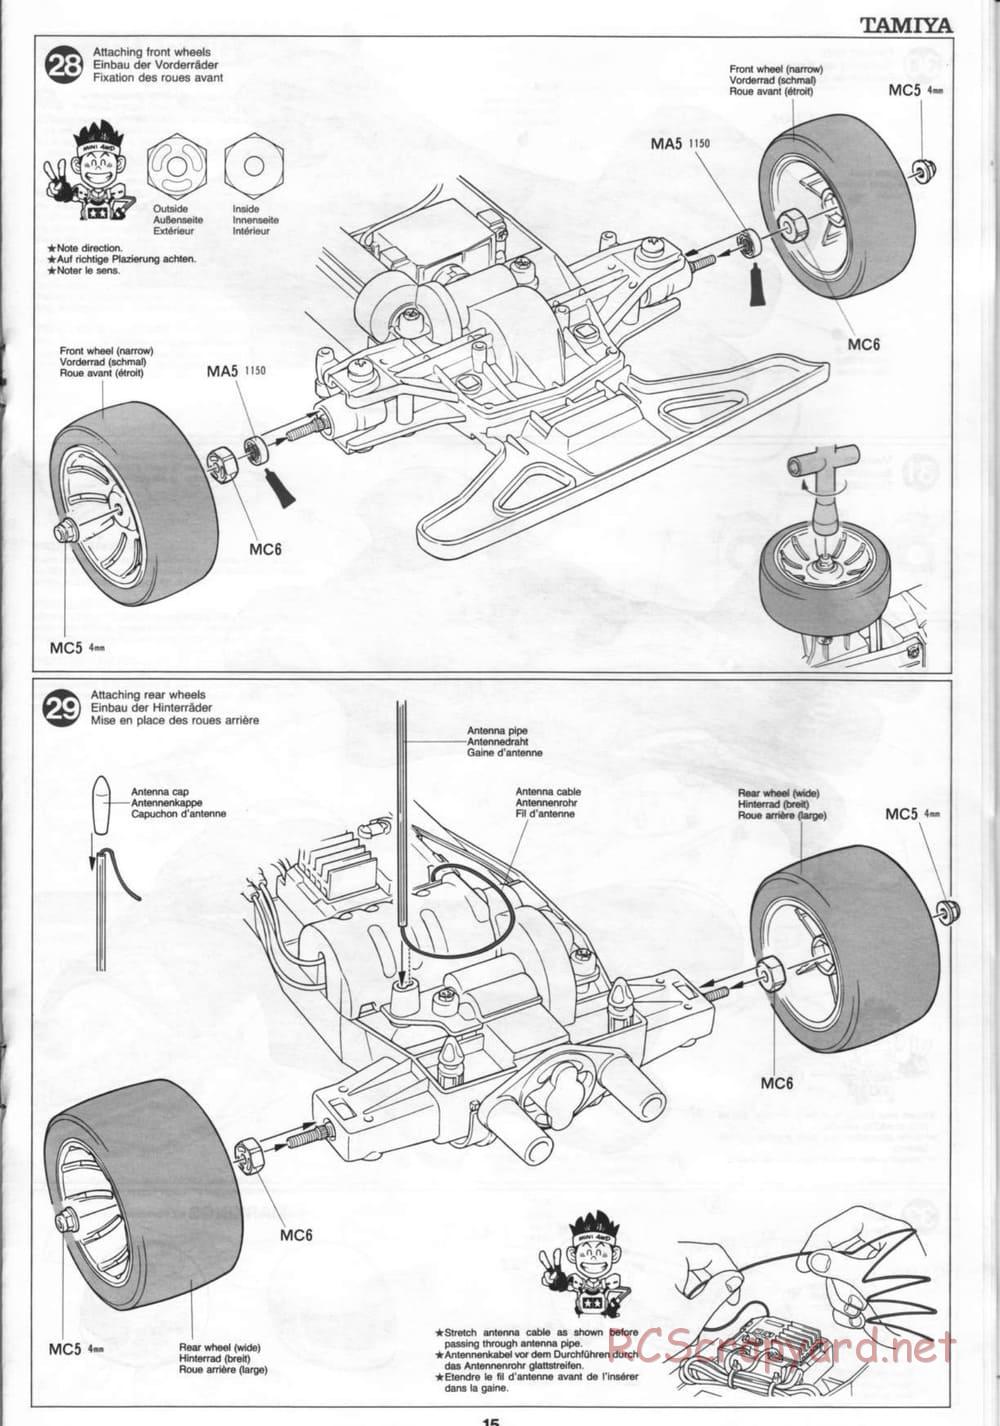 Tamiya - Thunder Blitz - Boy's 4WD Chassis - Manual - Page 15